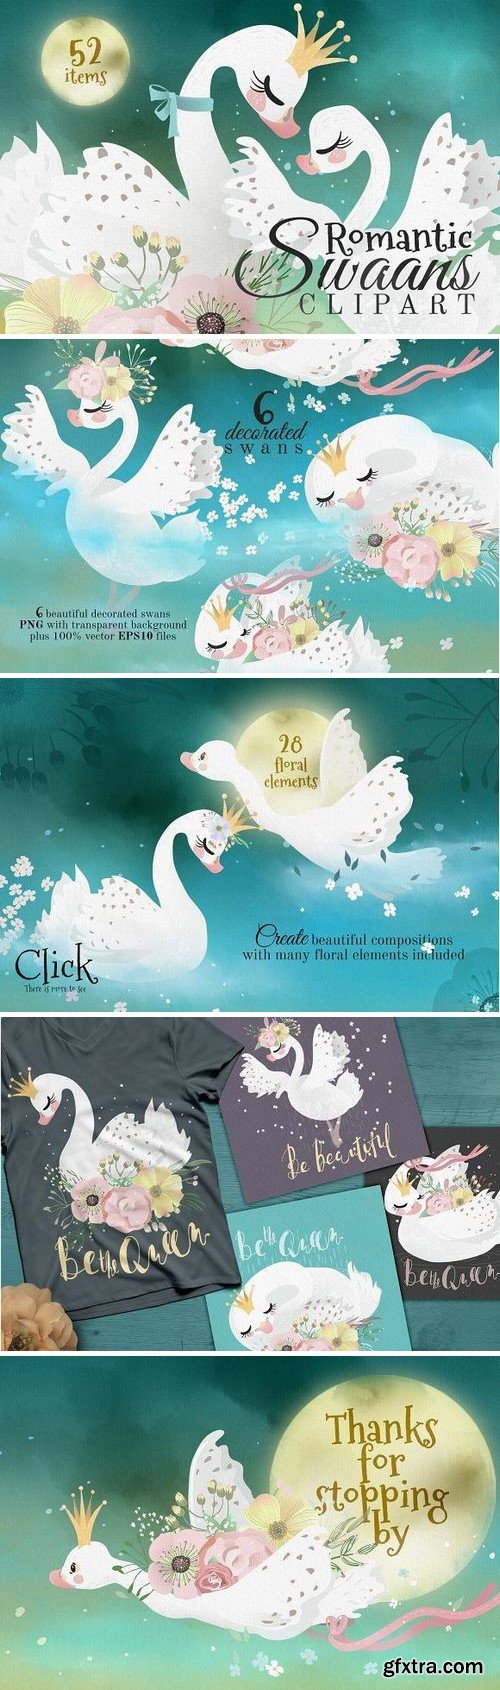 CM - Romantic Swans Clipart 2244992